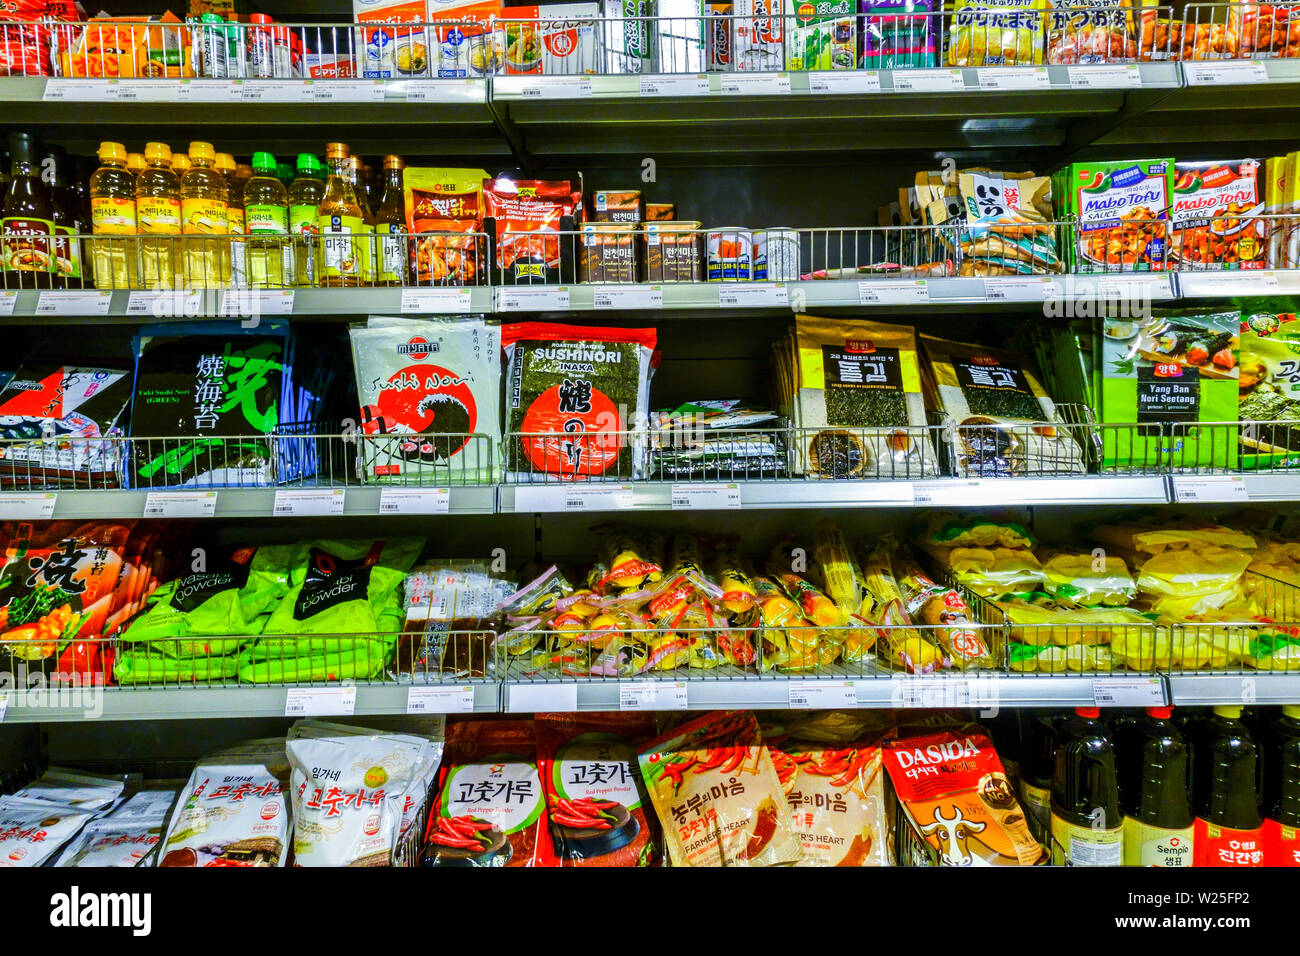 Supermarché asiatique 'Go Asia' étagères de supermarché, Ingrédients pour sushi Dresde, Allemagne étagère de supermarché Banque D'Images